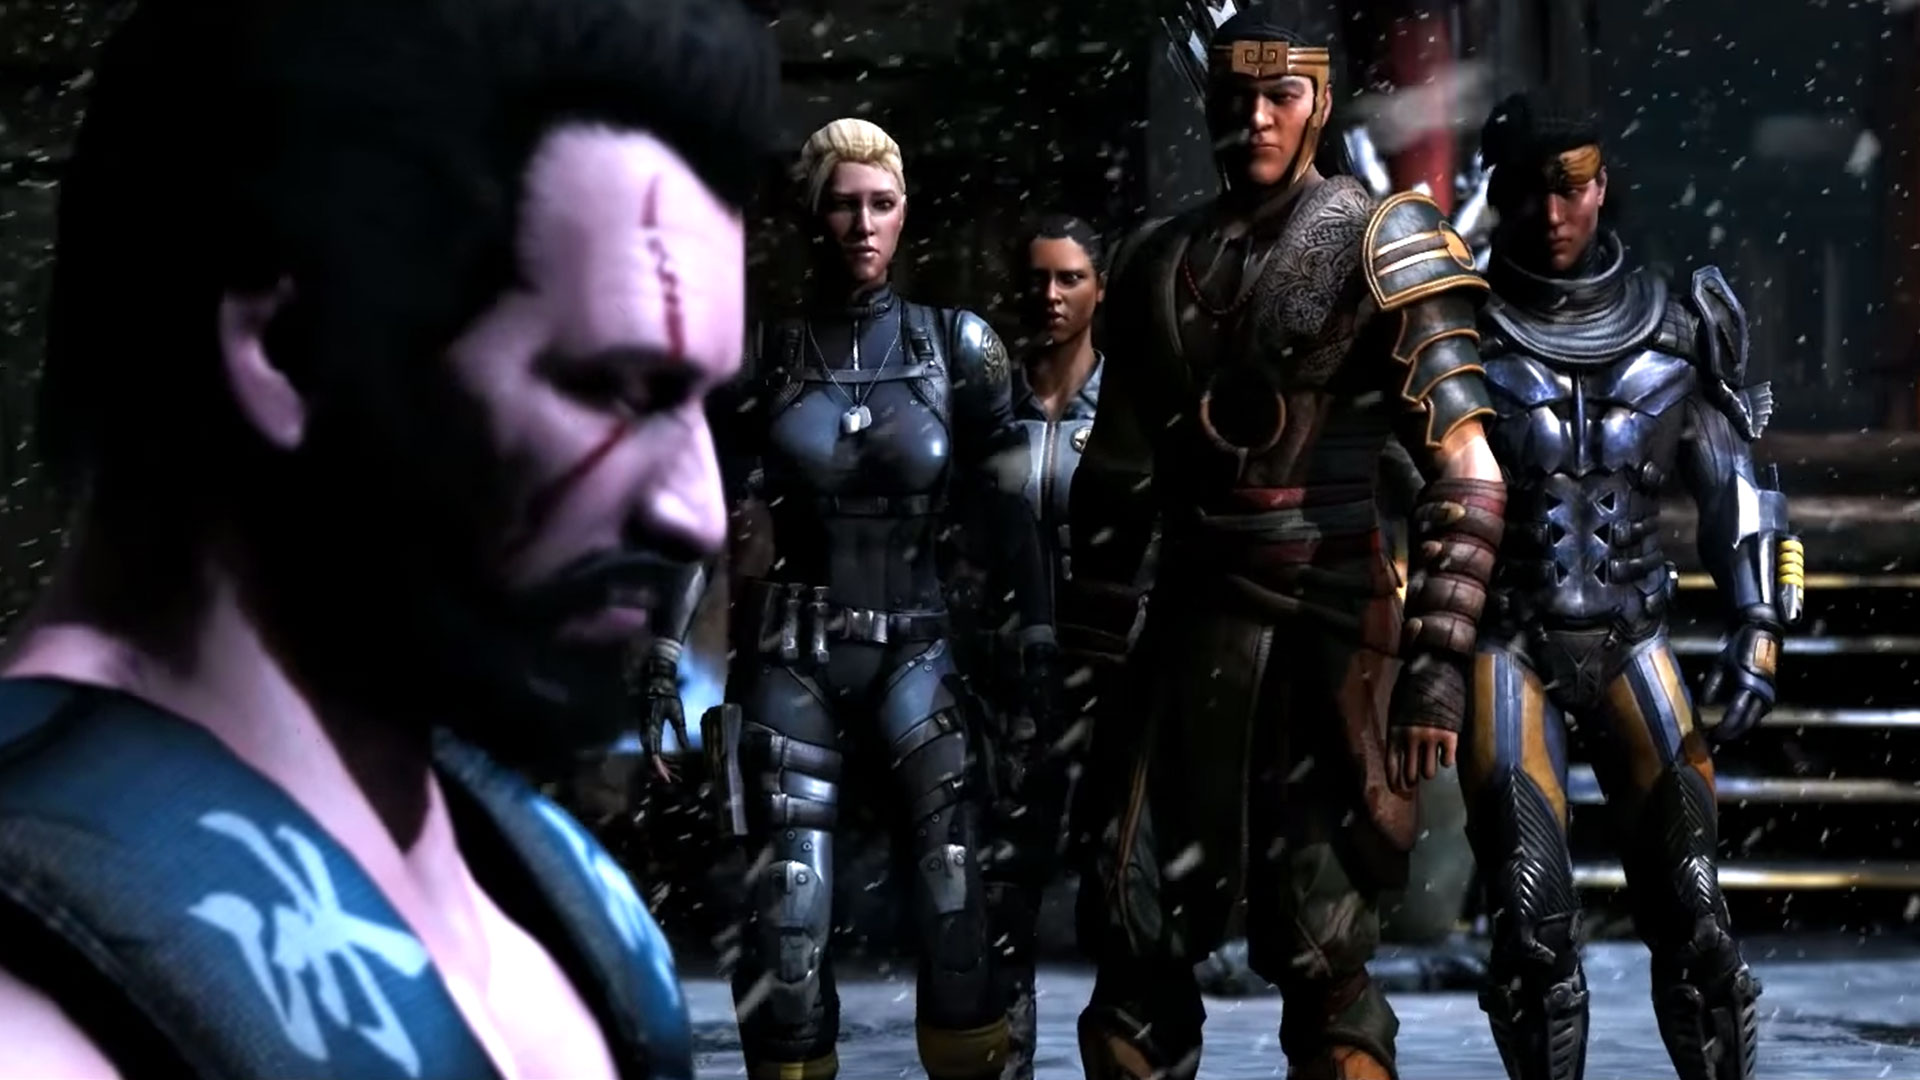 Mortal Kombat X: novo trailer com história e novos personagens